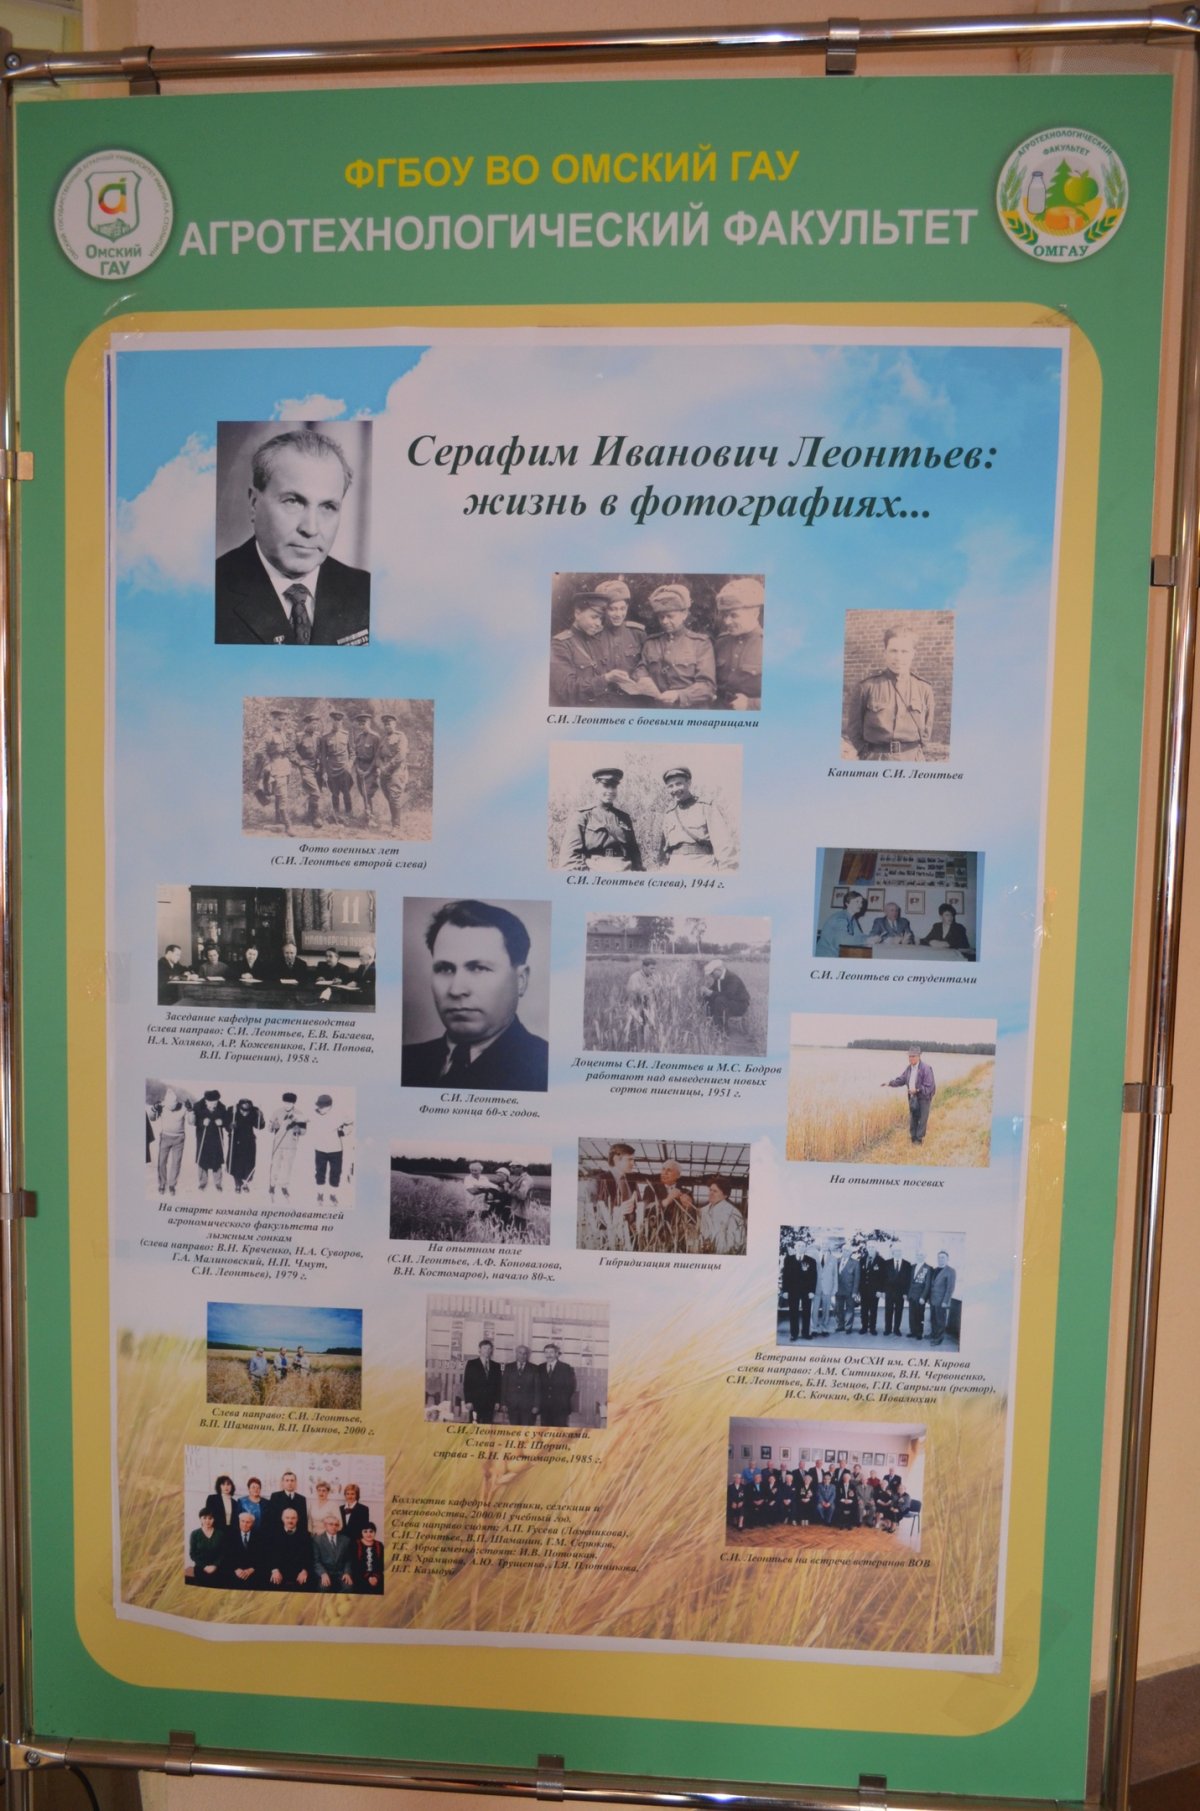 Сегодня в Омском ГАУ прошла Всероссийская (Национальная) научно-практическая конференция, посвященная 100-летию со дня рождения Серафима Ивановича Леонтьева.